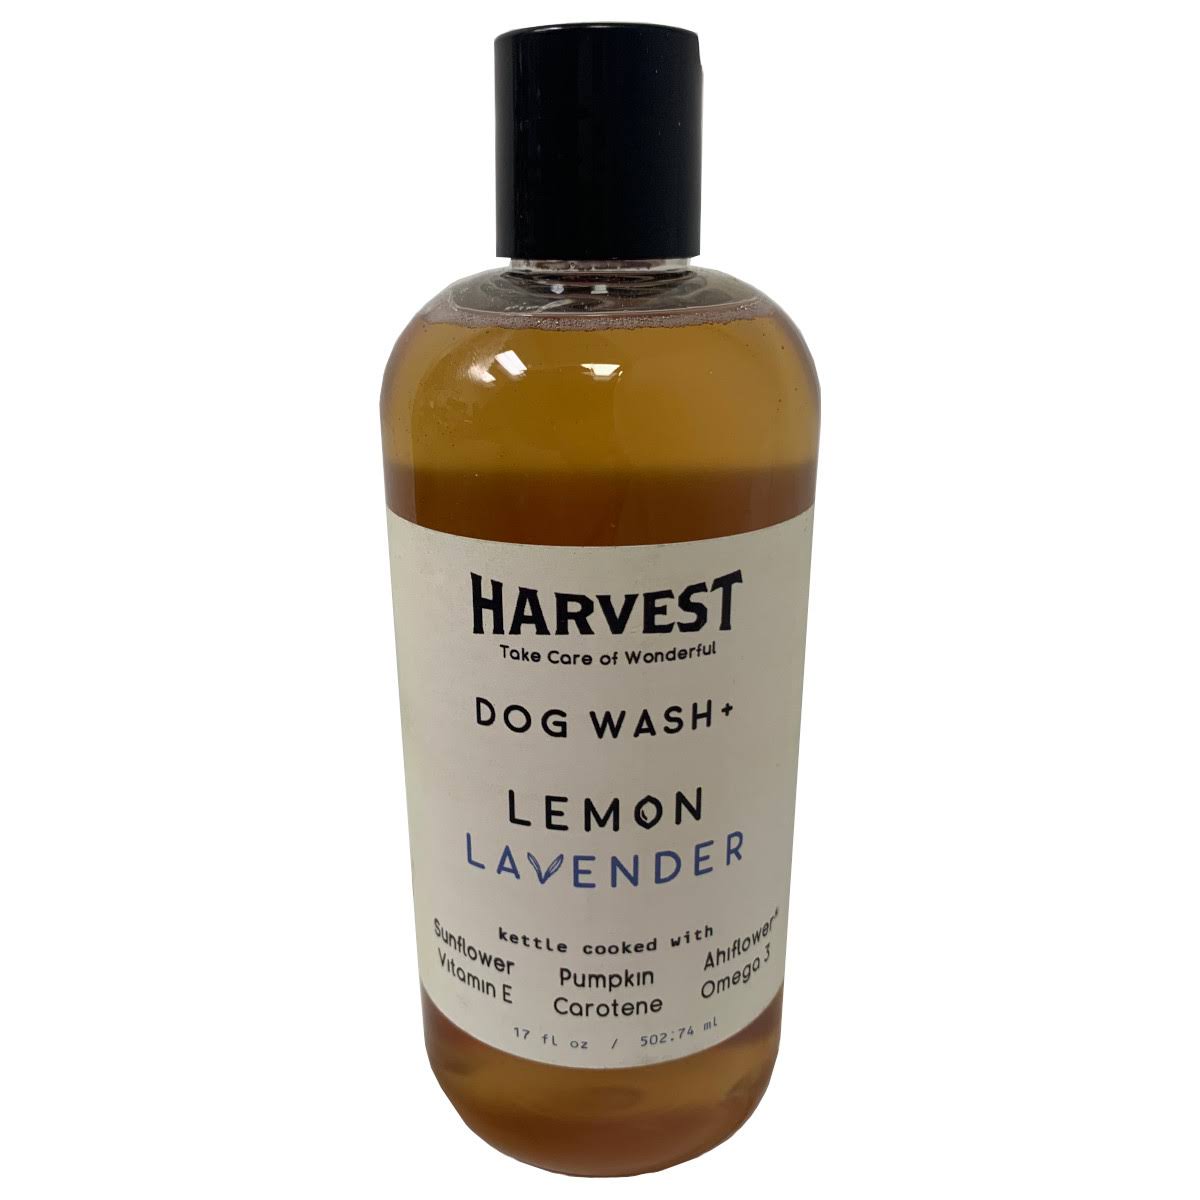 Harvest Lemon Lavender Dog Wash + Lemon Lavender / 17 oz